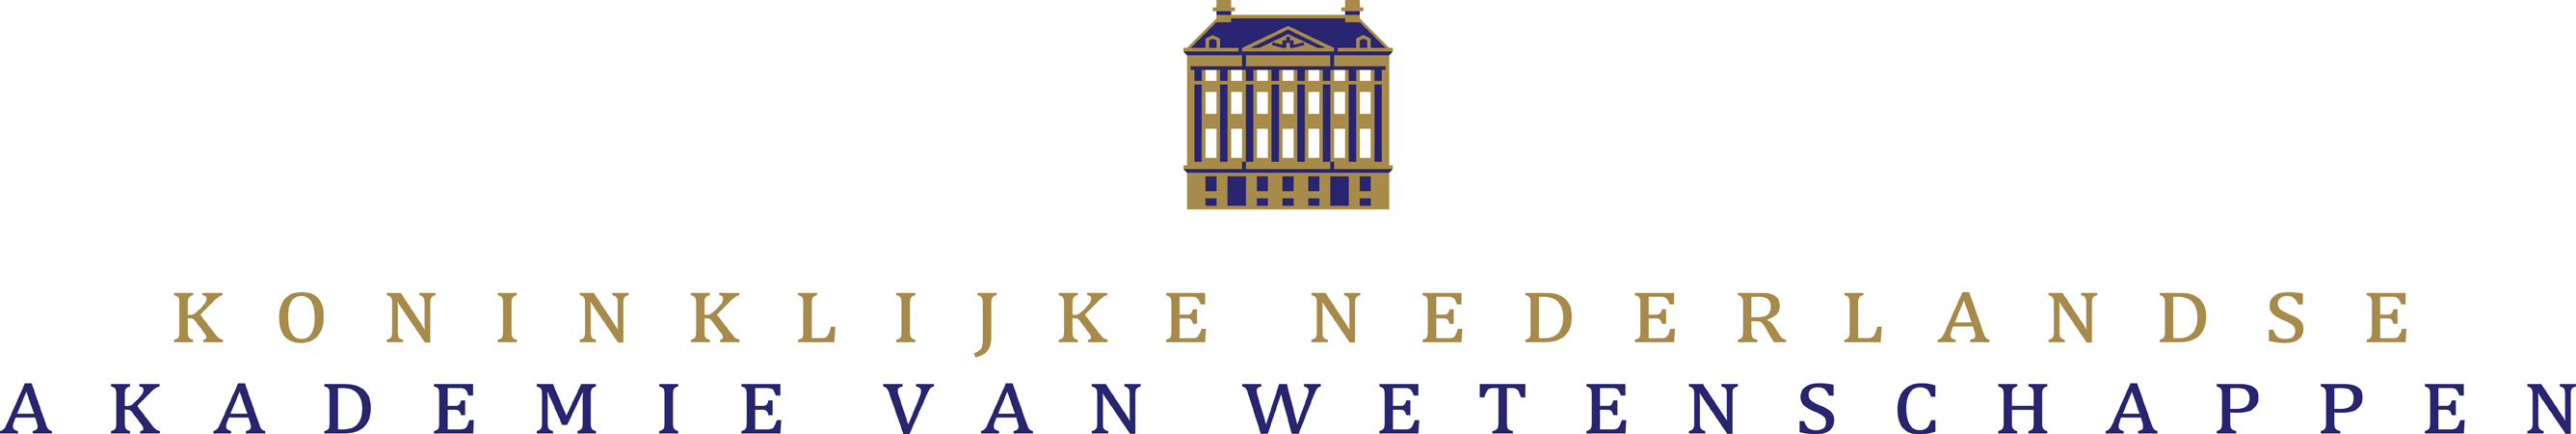 logo KNAW